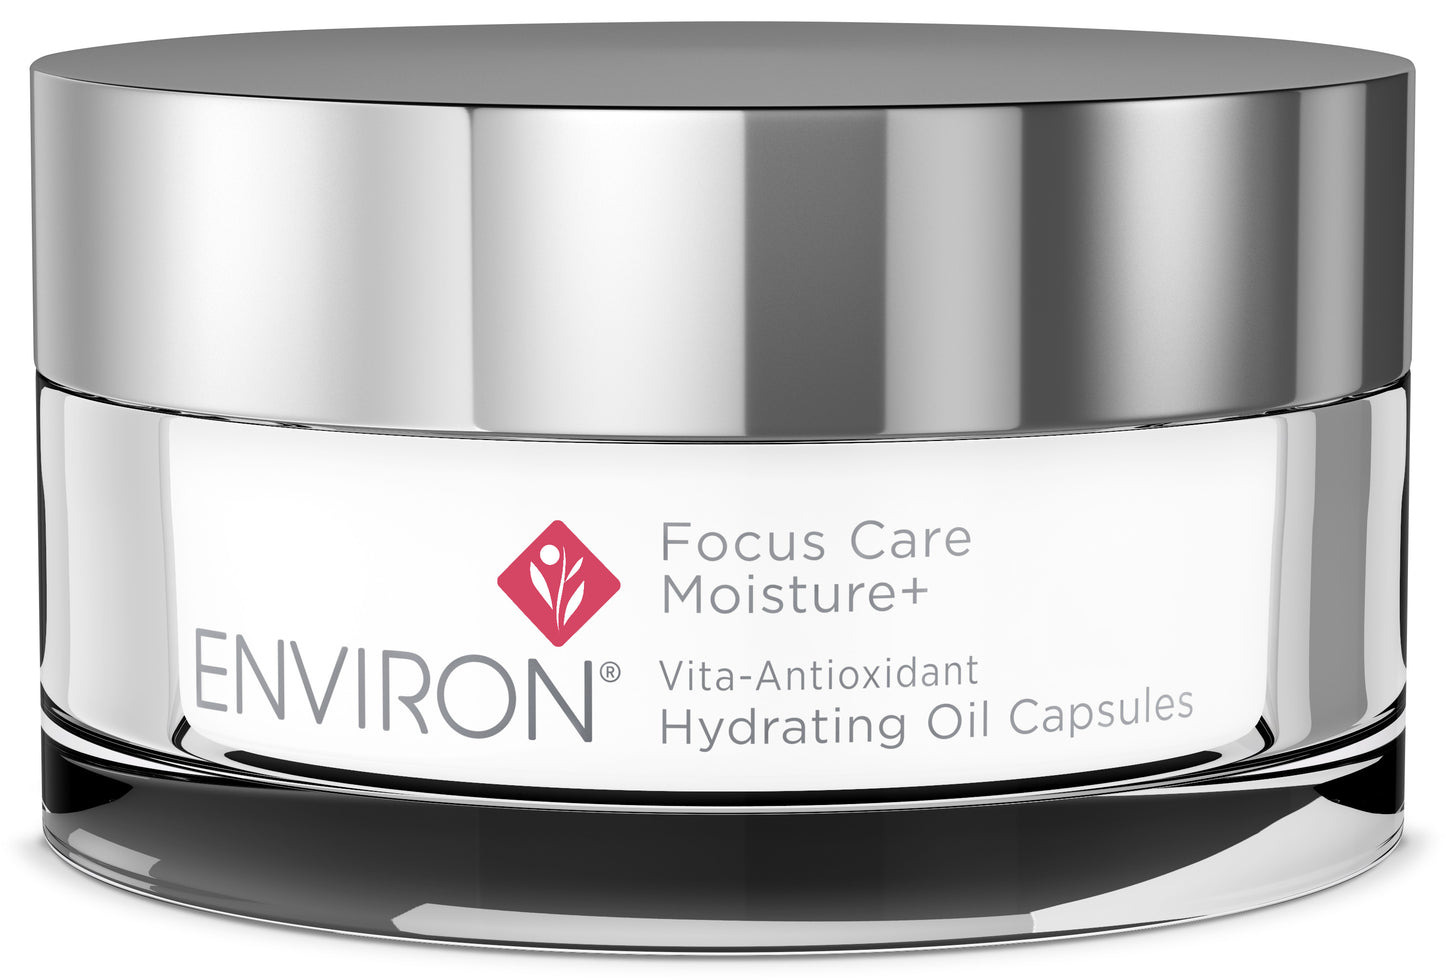 Environ Focus Care MOISTURE+ Vita-Antioxidant Hydrating Oil Capsules